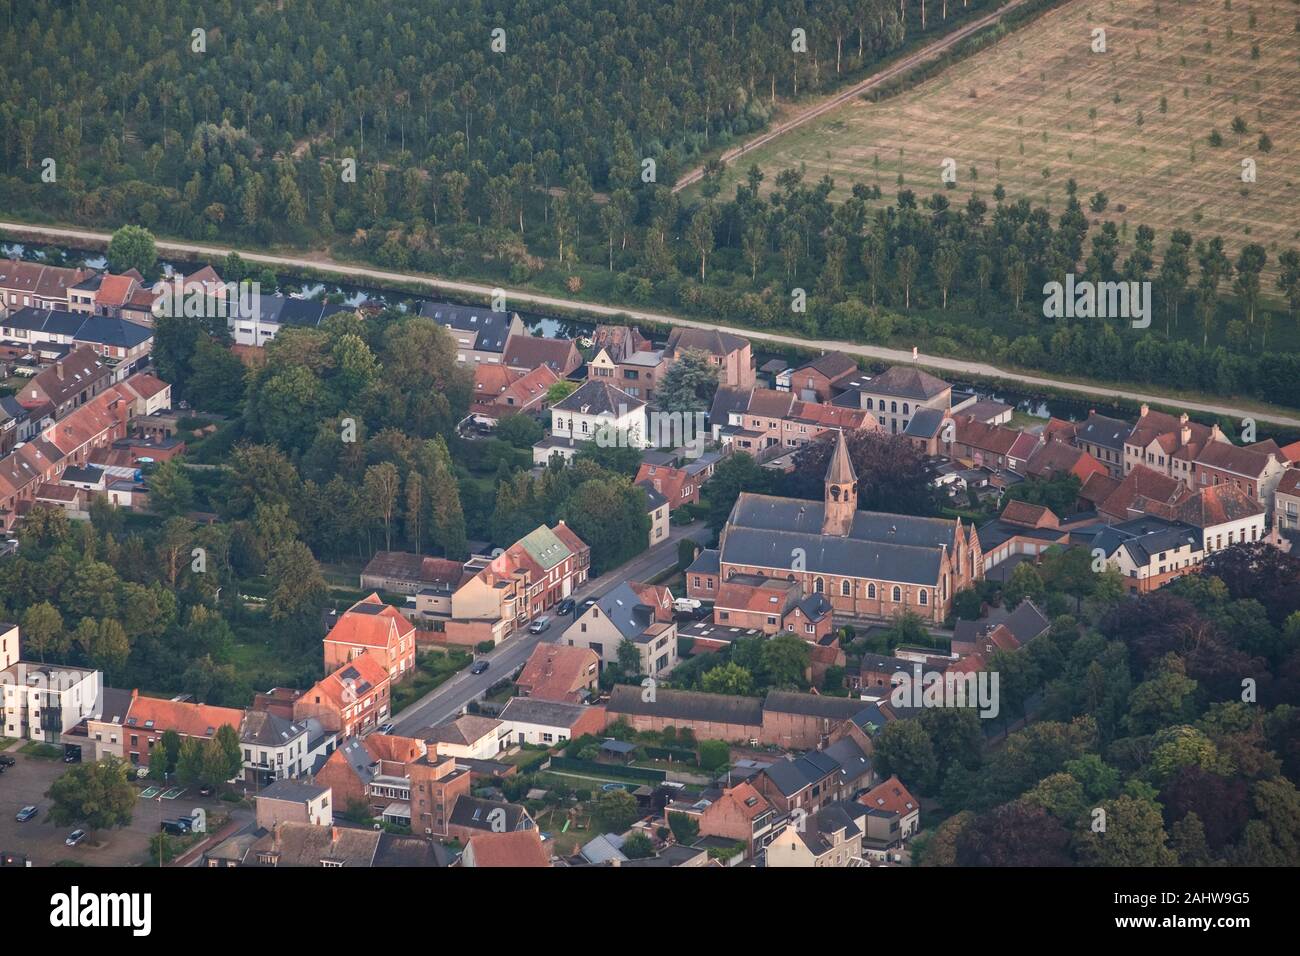 L'église de Saint Antoine, domine l'horizon de Moerbeke en Flandre-Orientale. Derrière, un canal et des rangées d'arbres forment une transition vers une région rurale. Banque D'Images